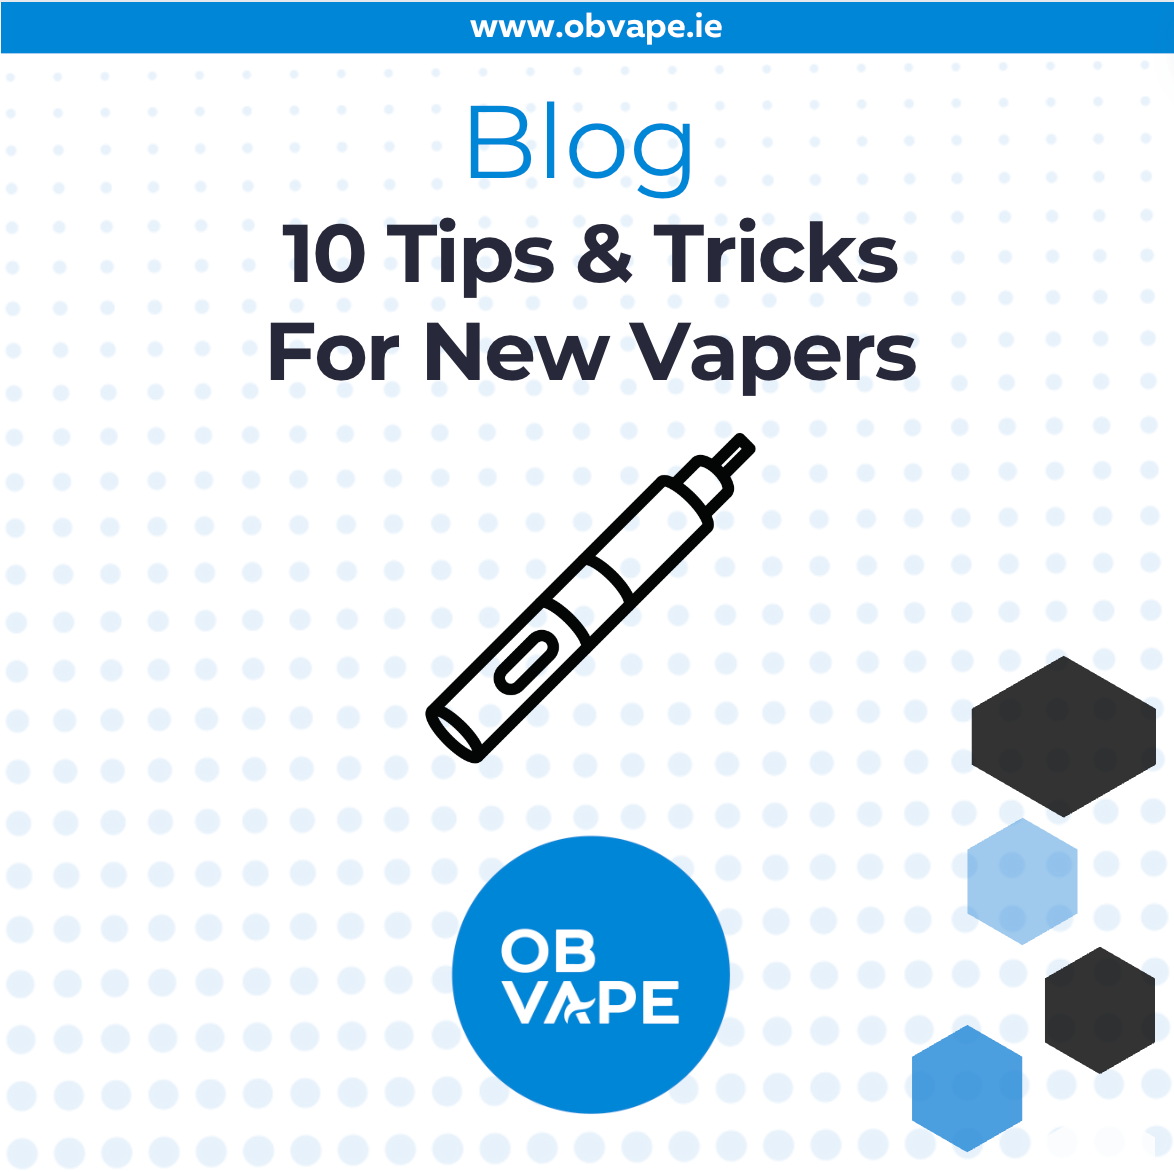 10 Tips & Tricks For New Vapers